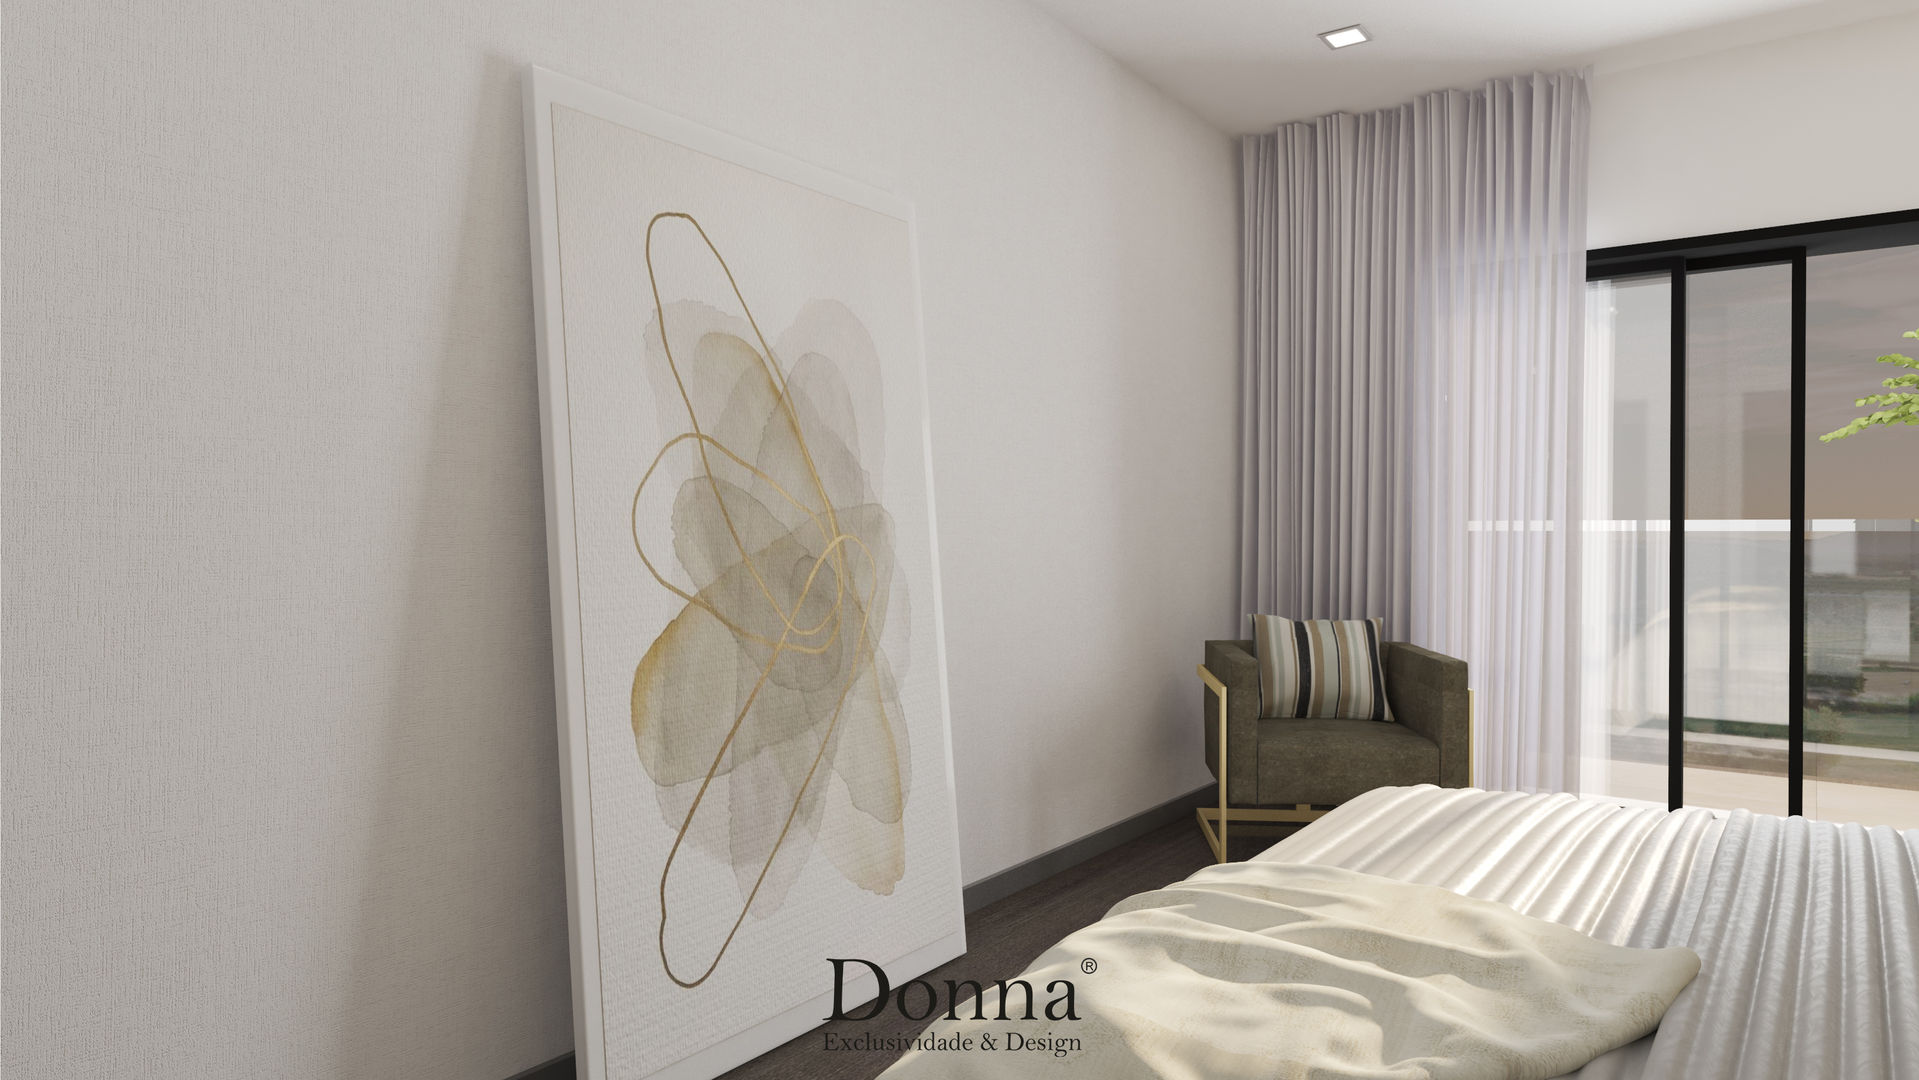 Projeto de Interiores 3D em Apartamento no Montijo , Donna - Exclusividade e Design Donna - Exclusividade e Design غرفة نوم